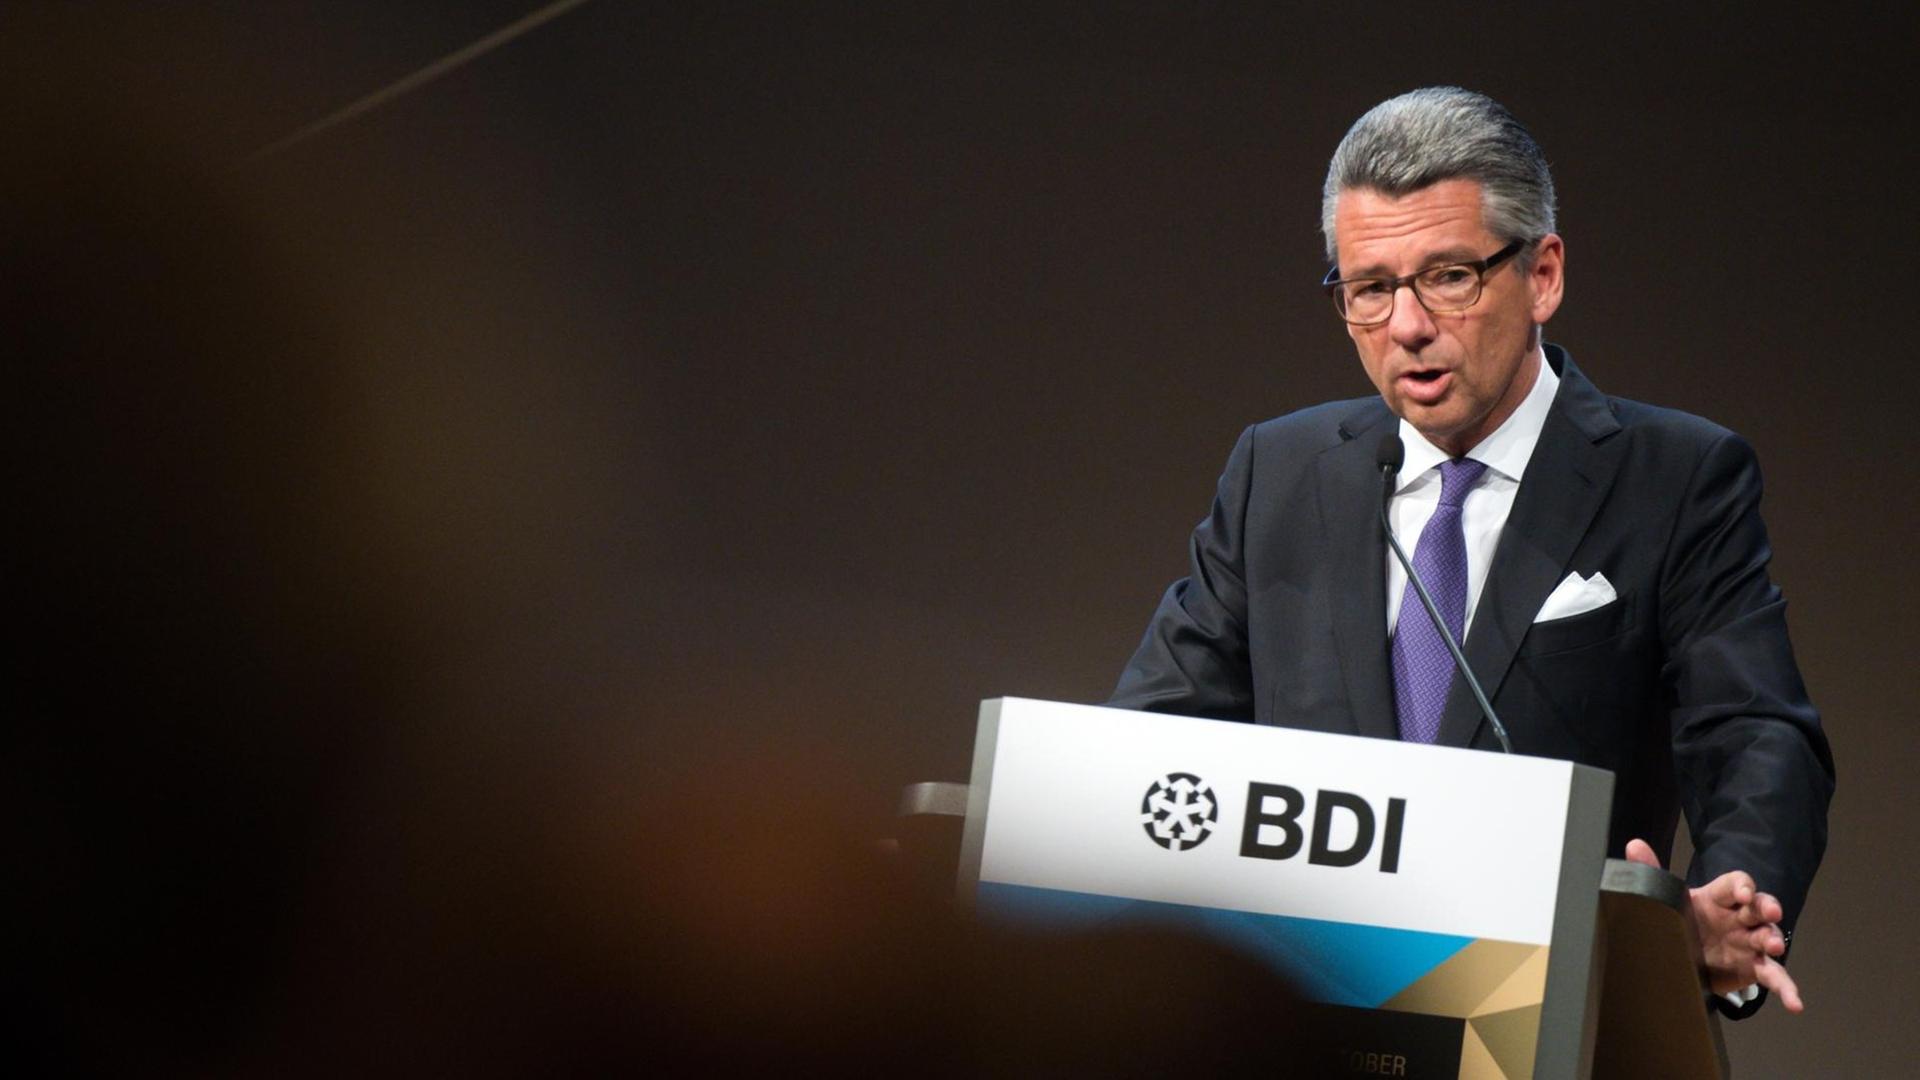 BDI-Präsident Ulrich Grillo spricht am 06.10.2016 in Berlin beim Tag der Deutschen Industrie 2016 des Bundesverbands der Deutschen Industrie (BDI).